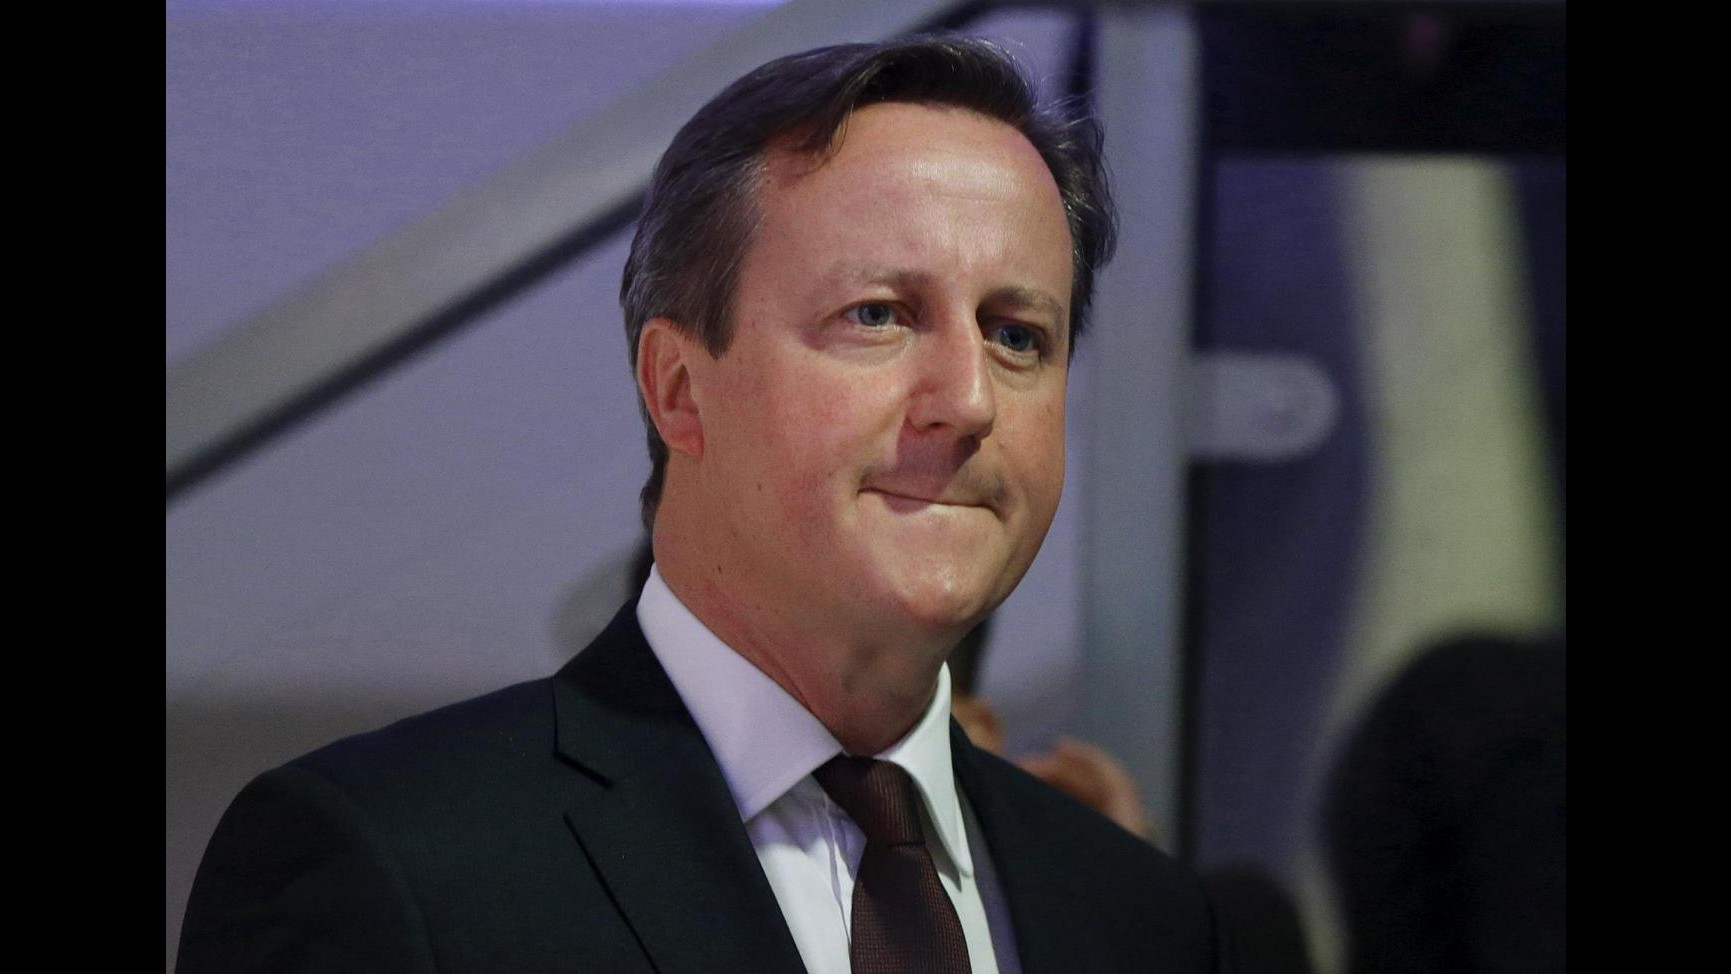 Immigrazione, ministro Svezia accusa Cameron: Londra faccia di più